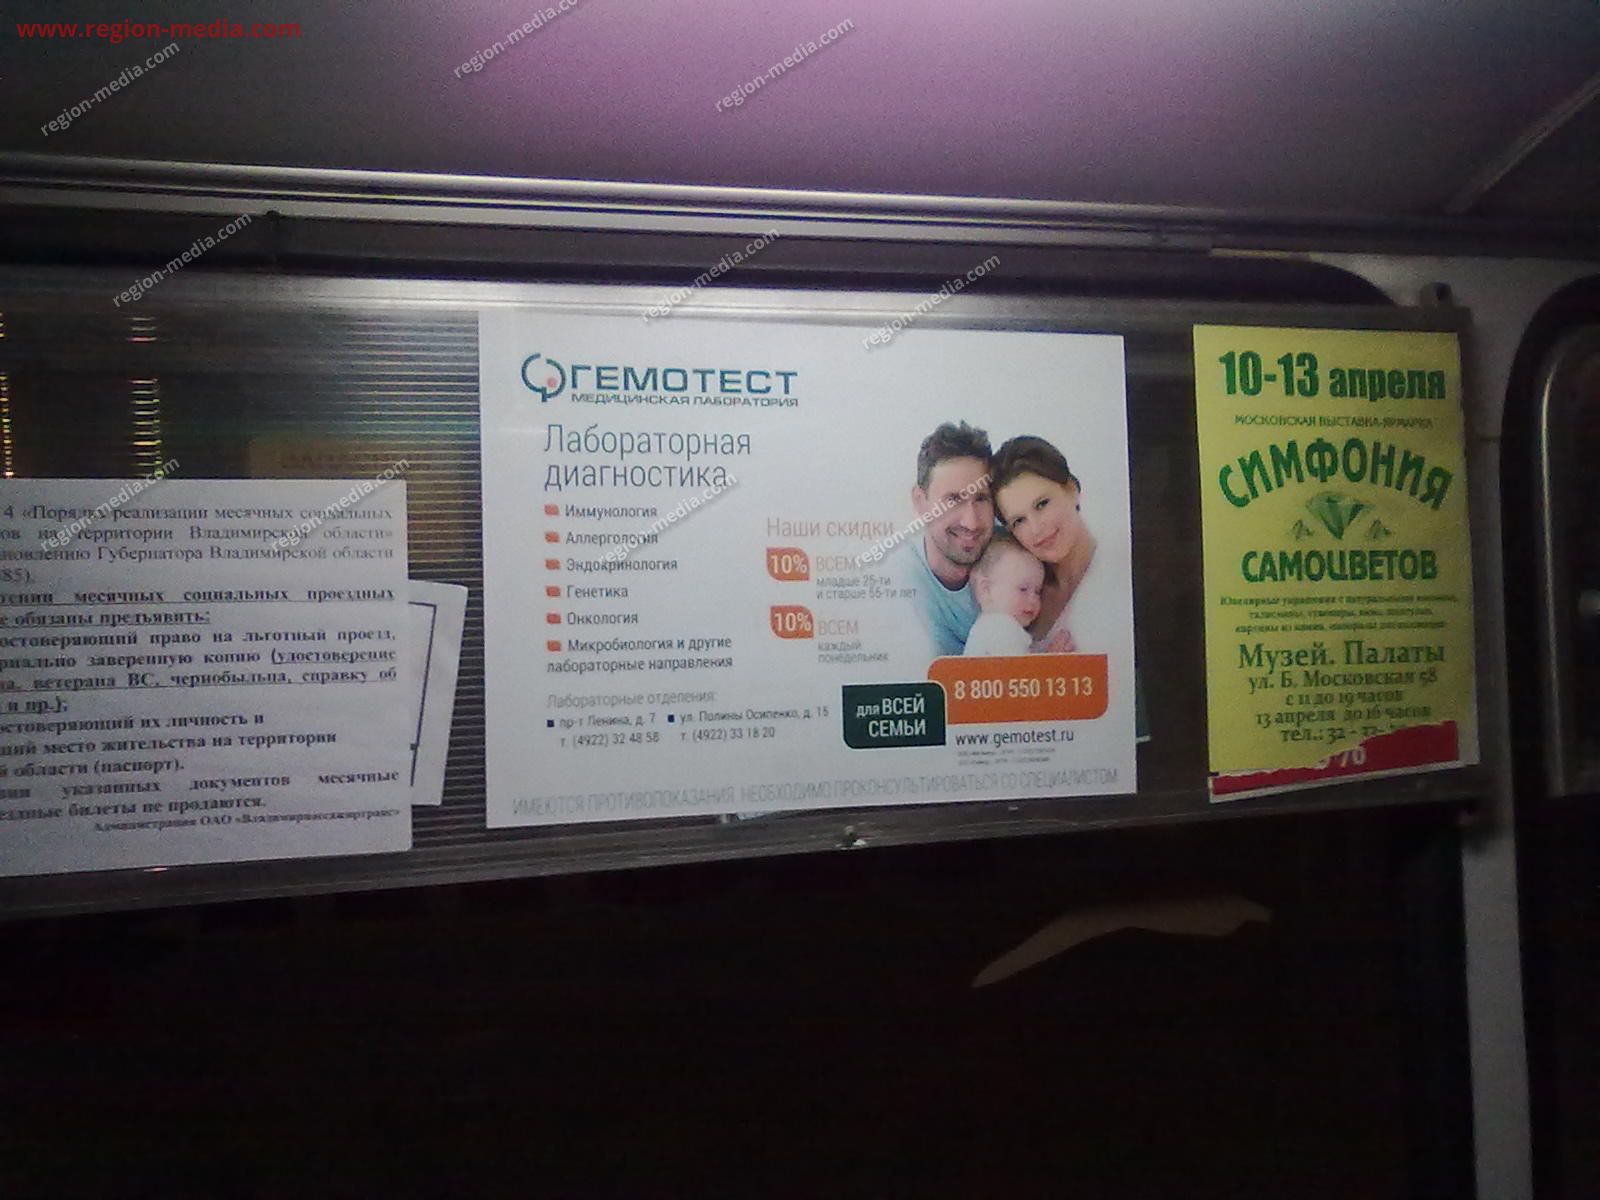 Размещение рекламы в автобусах компании "Гемотест" в г.Владимир